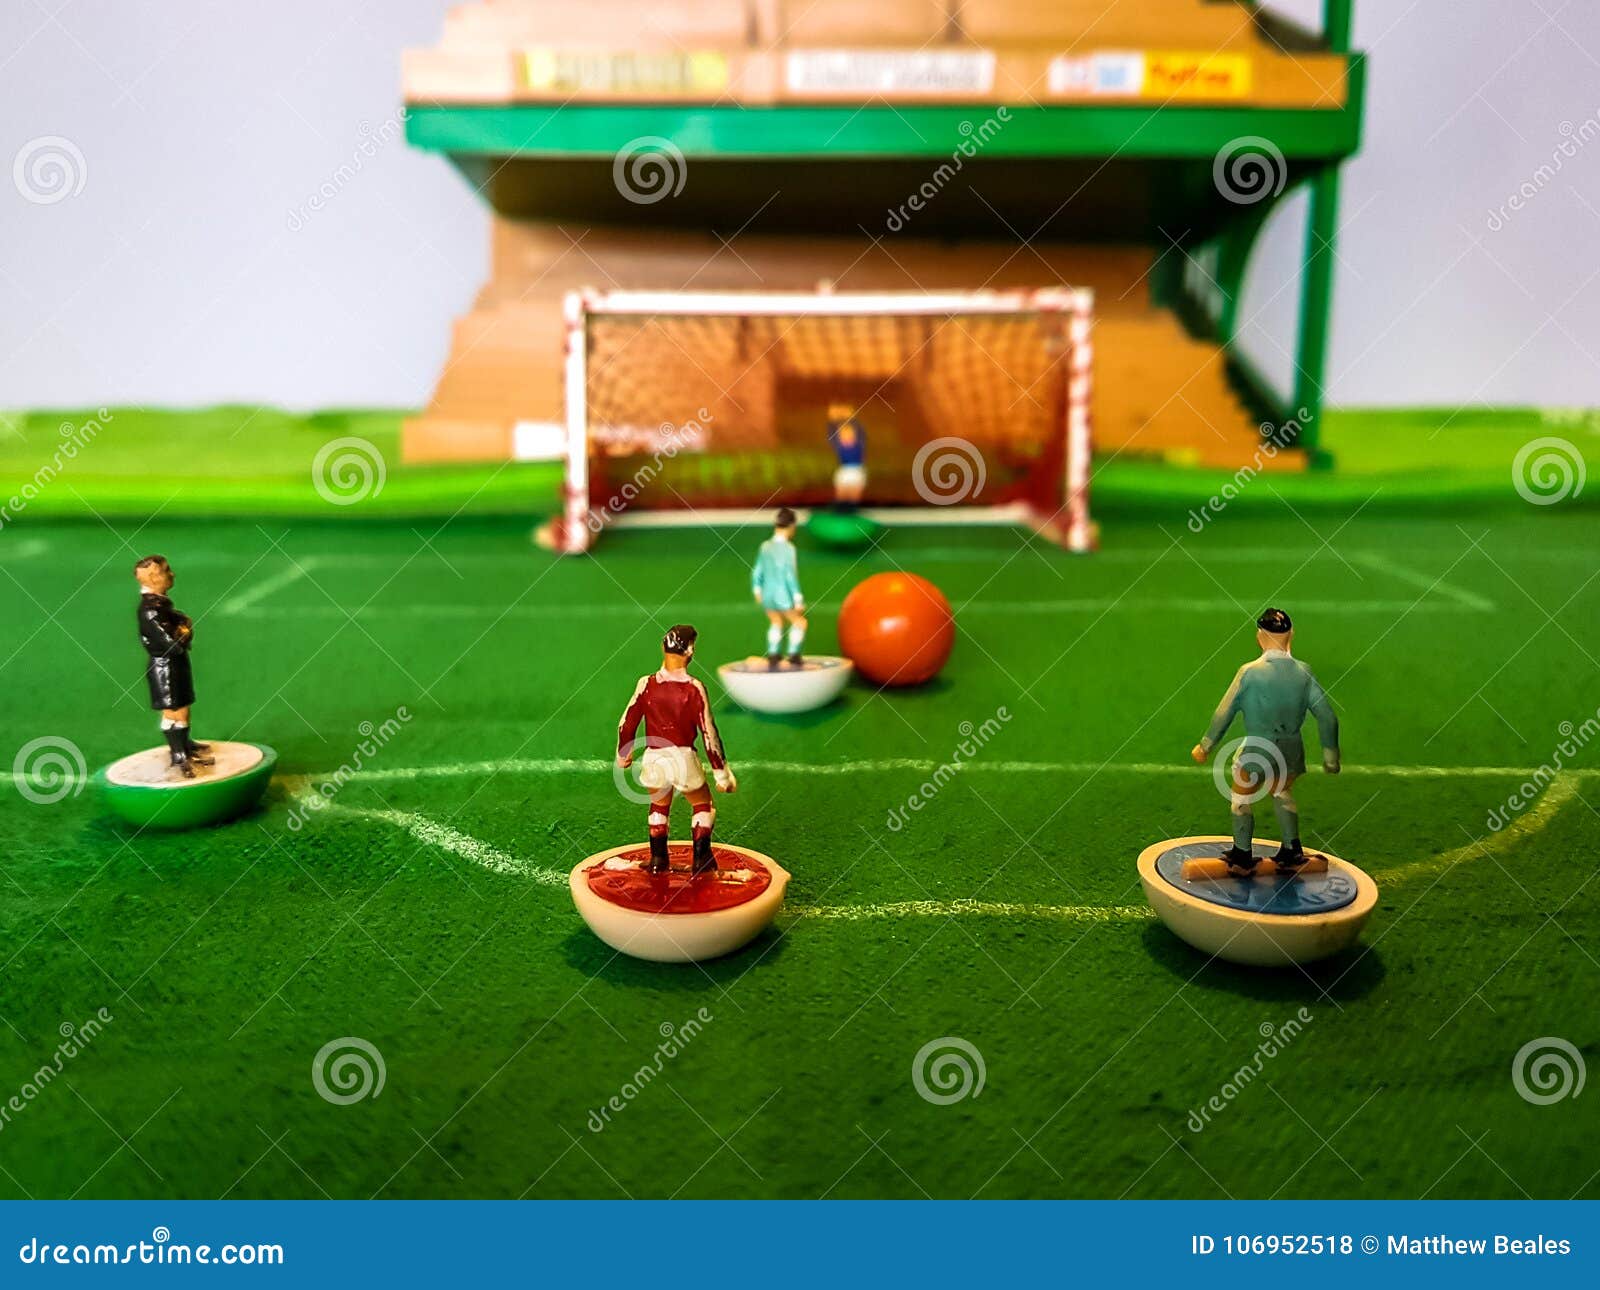 Table_soccer-, soccer, table, diego maradona, zinedine zidane, pele, HD  wallpaper